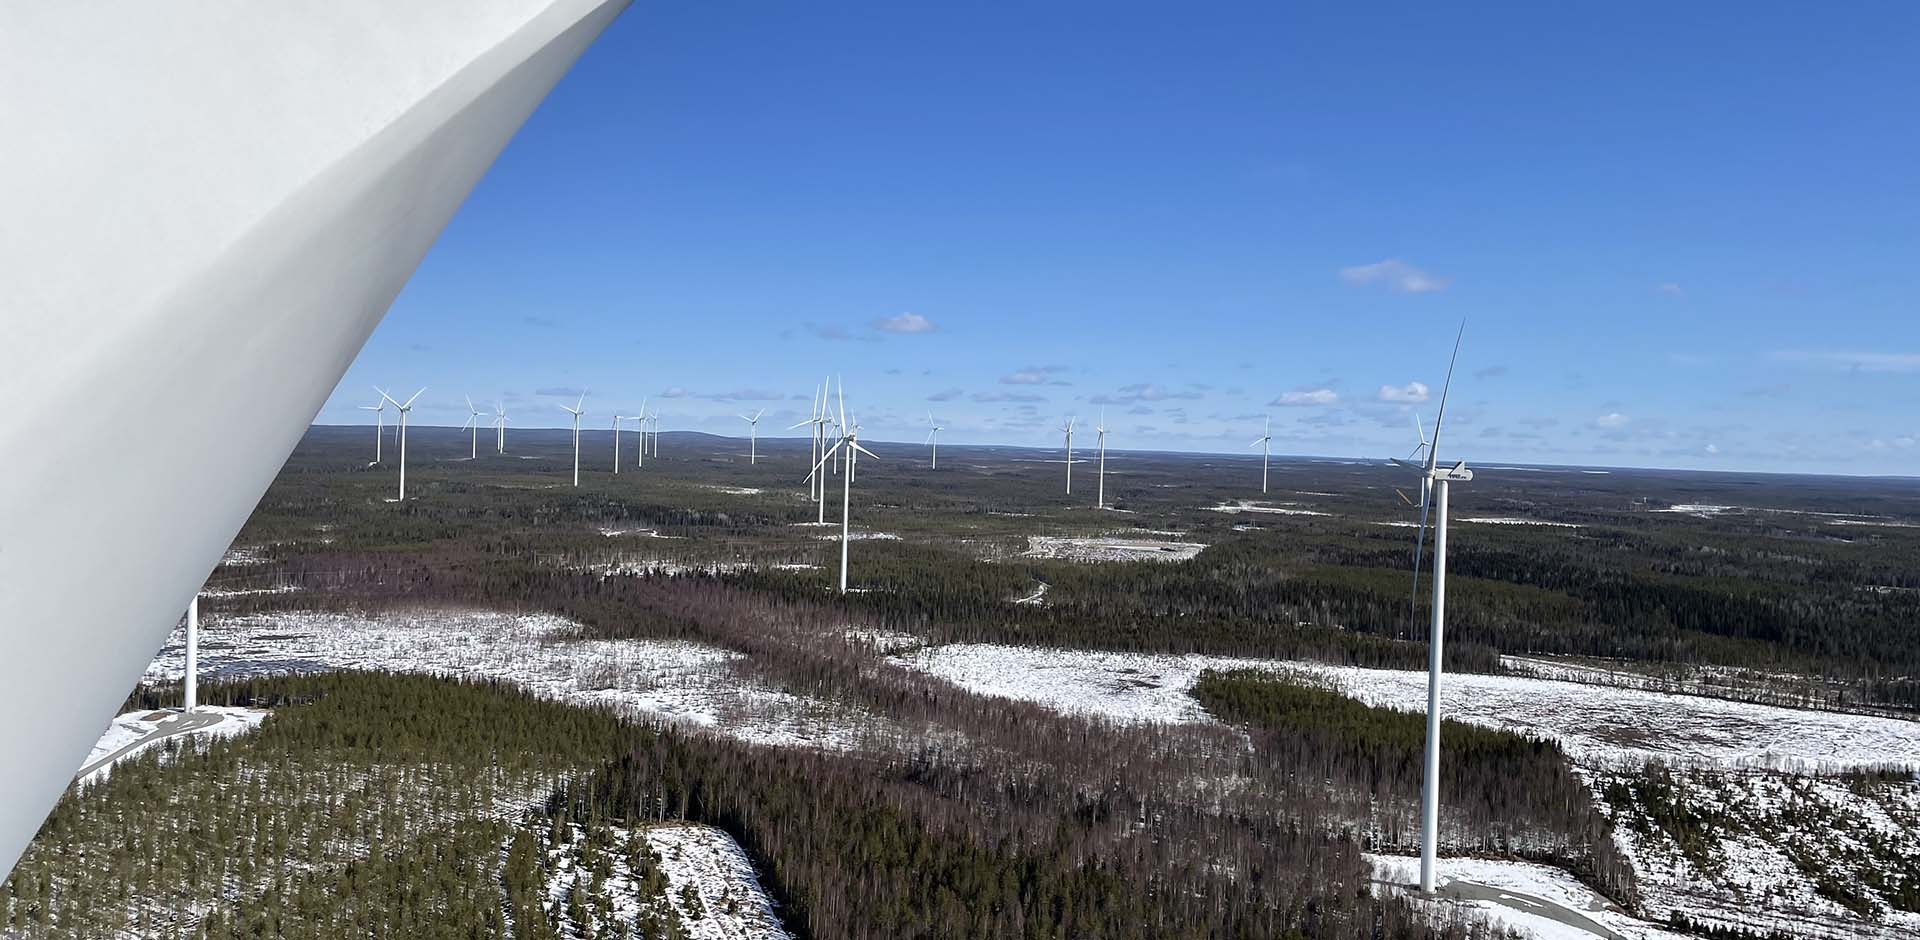 En vy från toppen av vindkraftverket till en vinterskog (bild av Antti Polet)